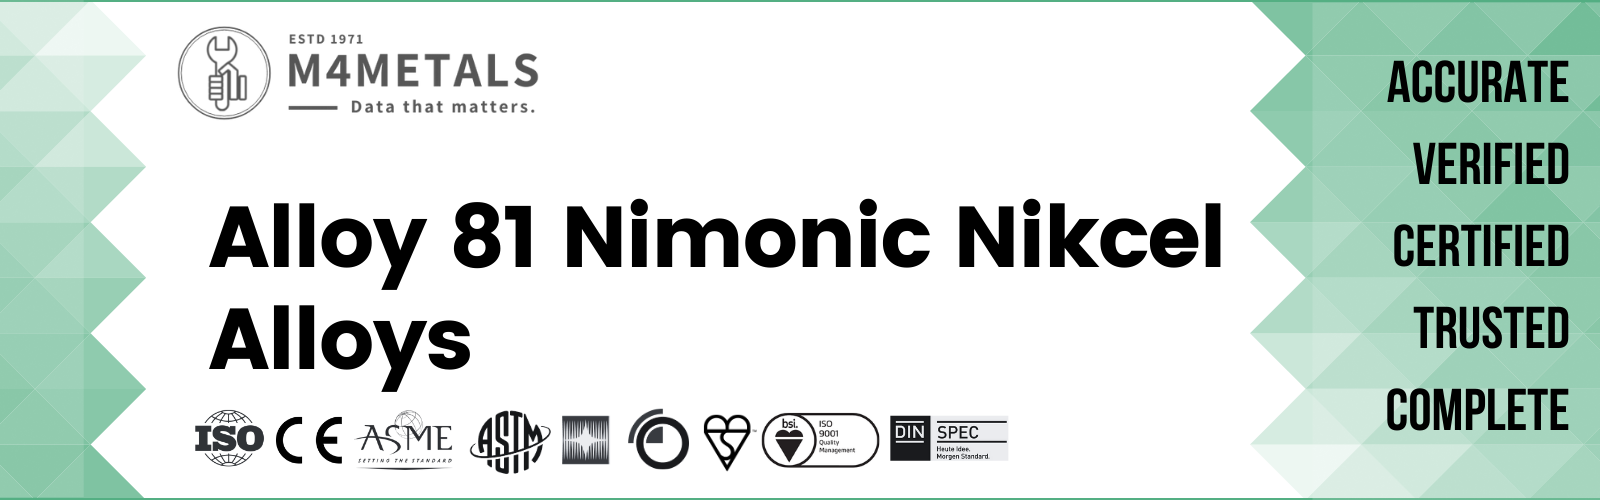 Nimonic Alloy 81